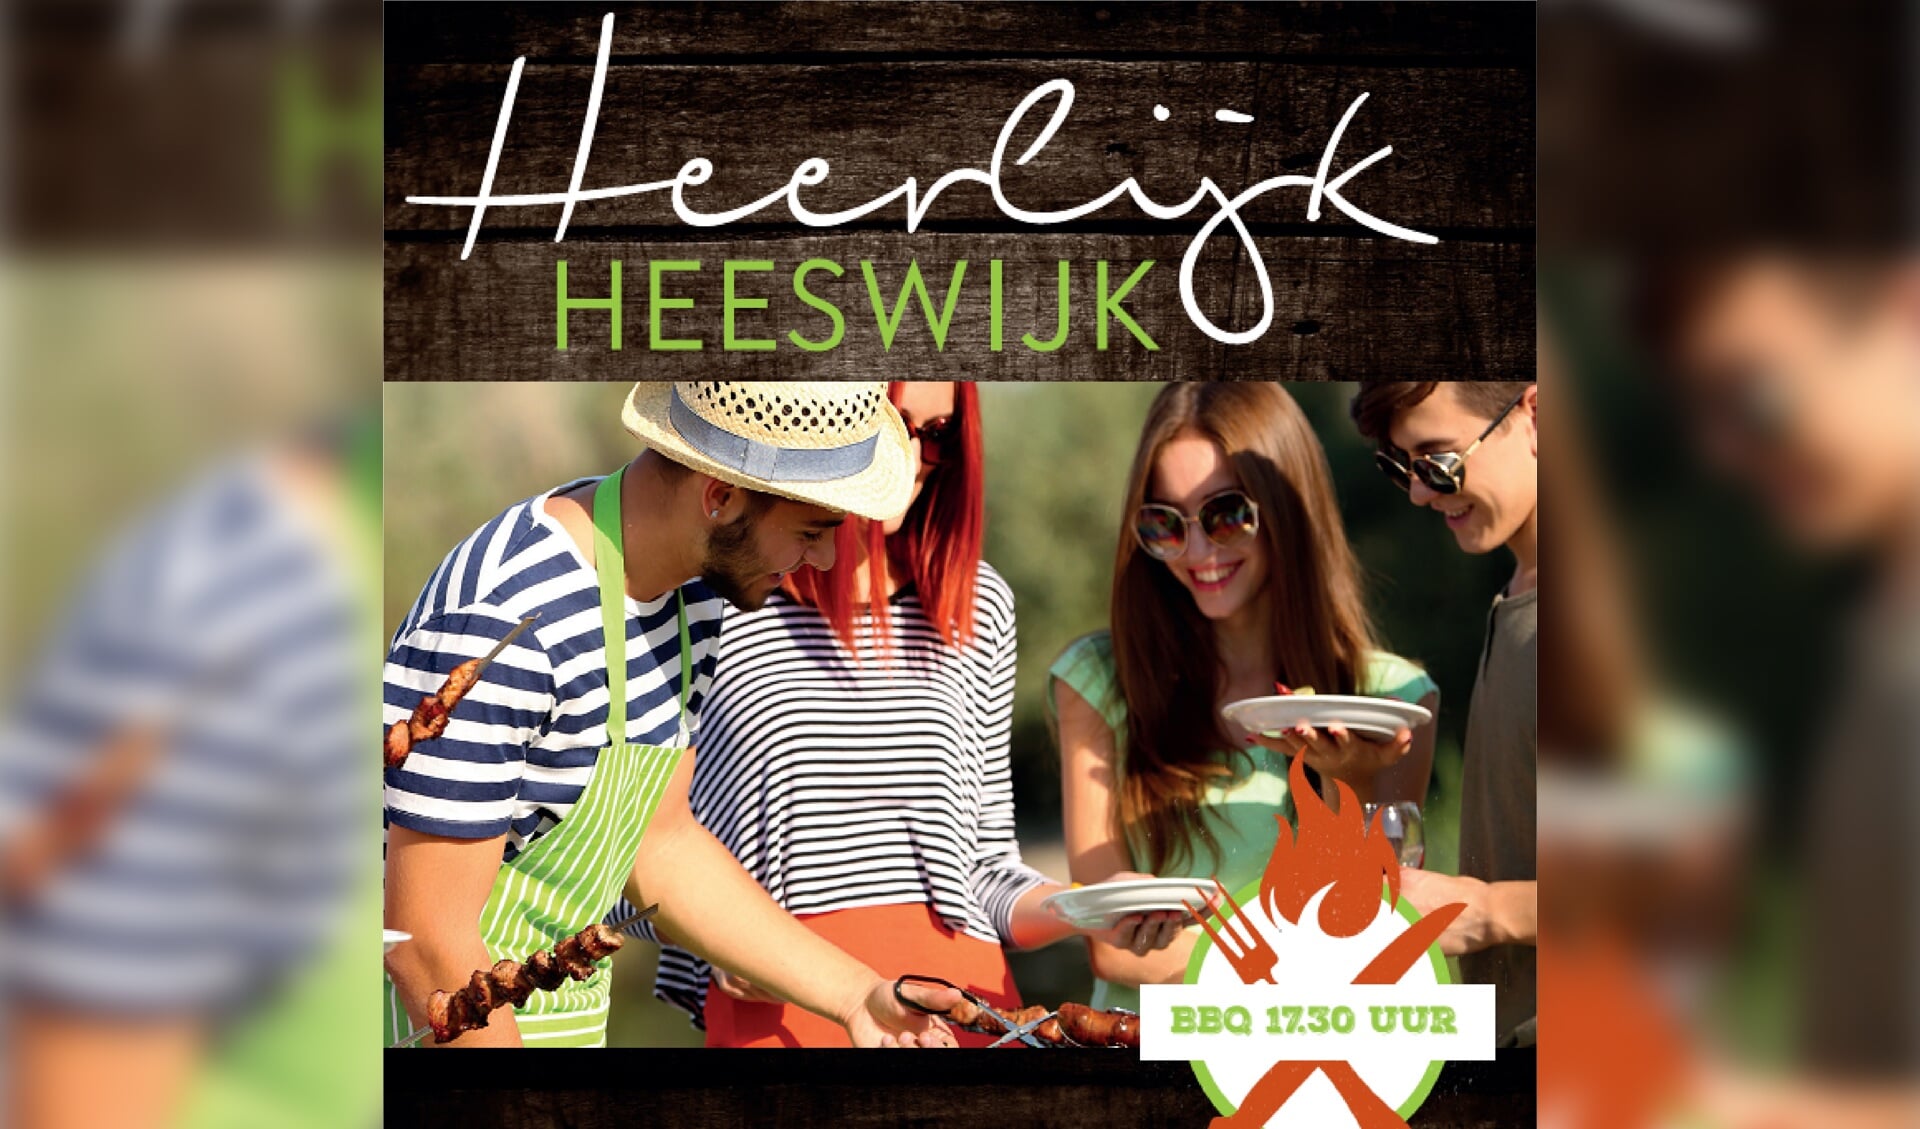 Heerlijk Heeswijk beleeft op zaterdag 4 september de tweede editie.